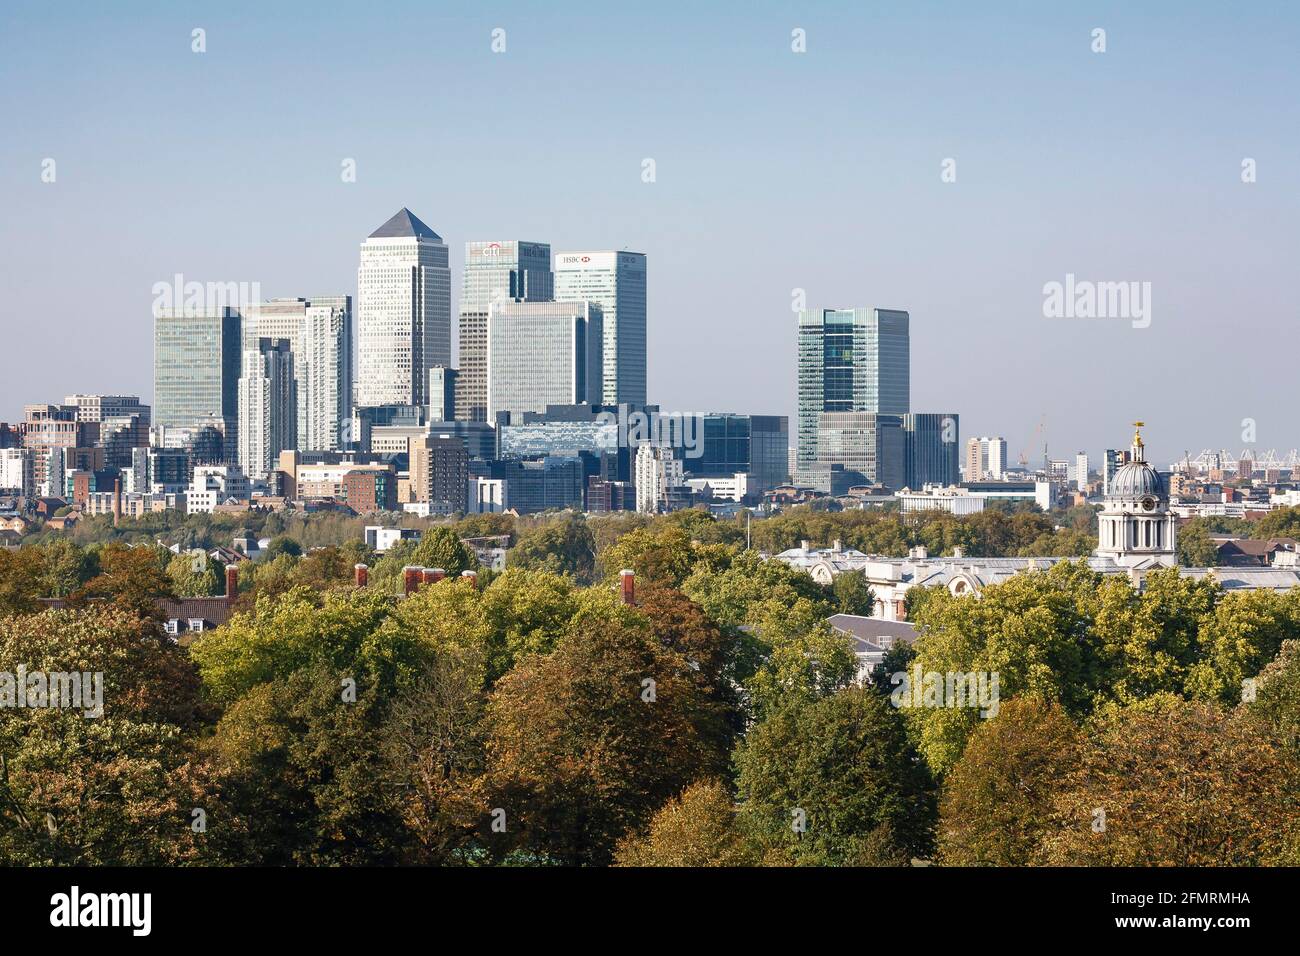 LONDRA, Regno Unito - 03 ottobre 2011. Spazi verdi. Skyline della città del centro di Londra, Regno Unito, con alberi e Canary Wharf Foto Stock